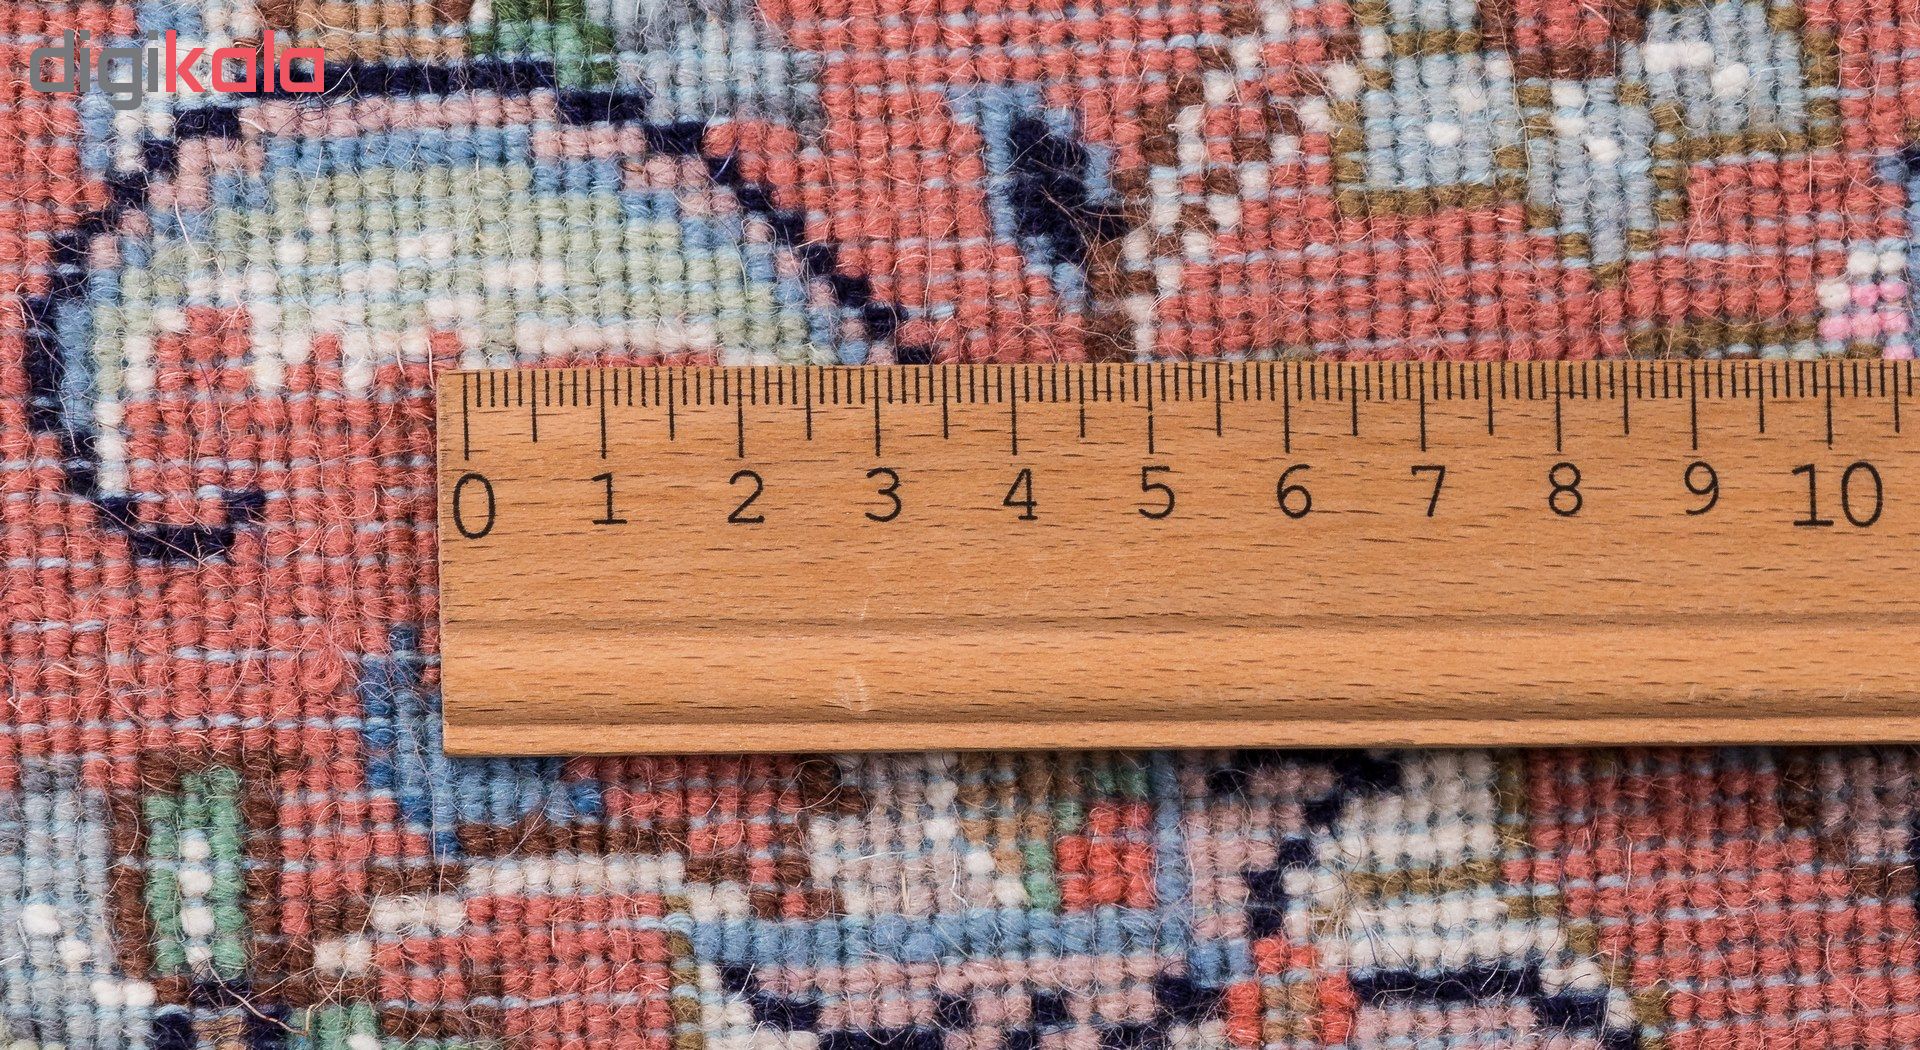 یک جفت فرش دستباف شش متری سی پرشیا کد 166060